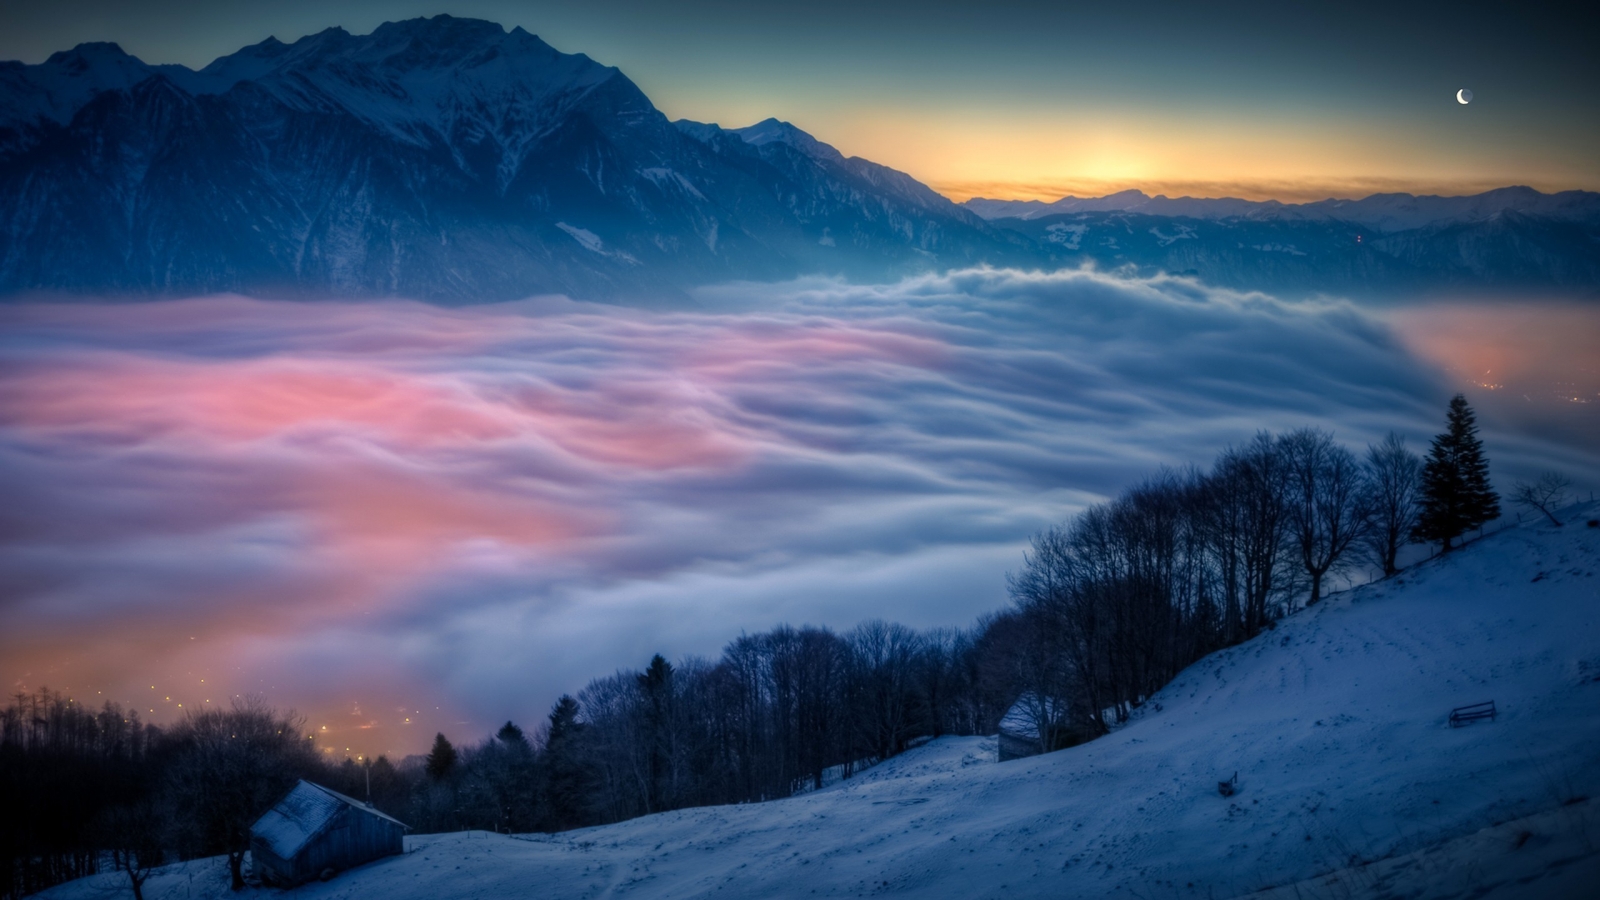 Mountain Fog for 1600 x 900 HDTV resolution